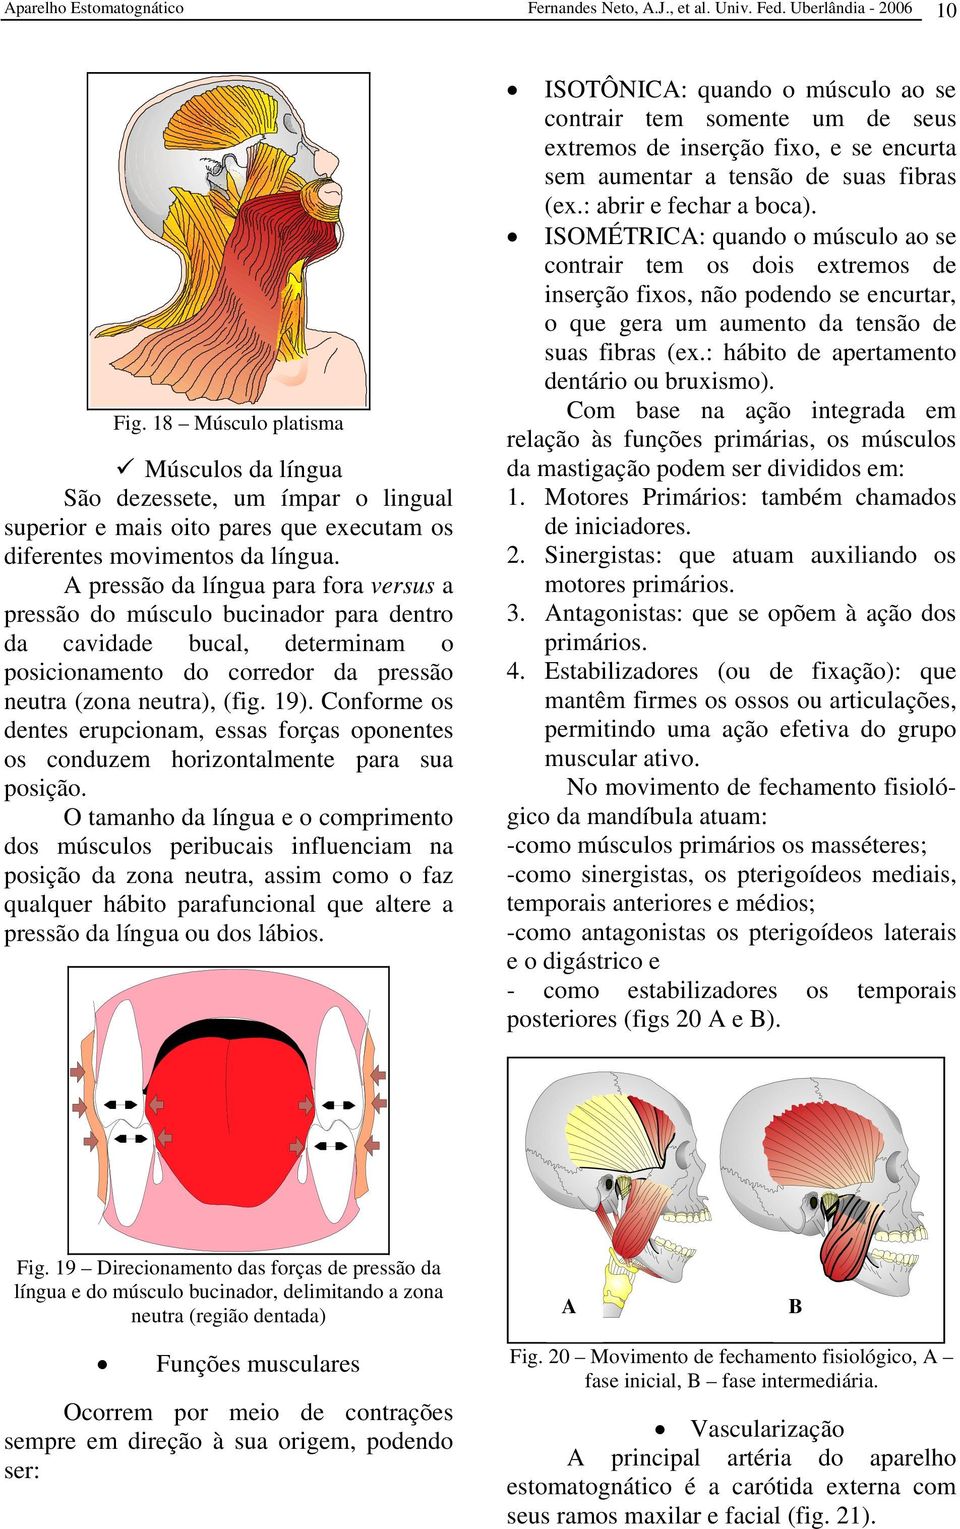 A pressão da língua para fora versus a pressão do músculo bucinador para dentro da cavidade bucal, determinam o posicionamento do corredor da pressão neutra (zona neutra), (fig. 19).